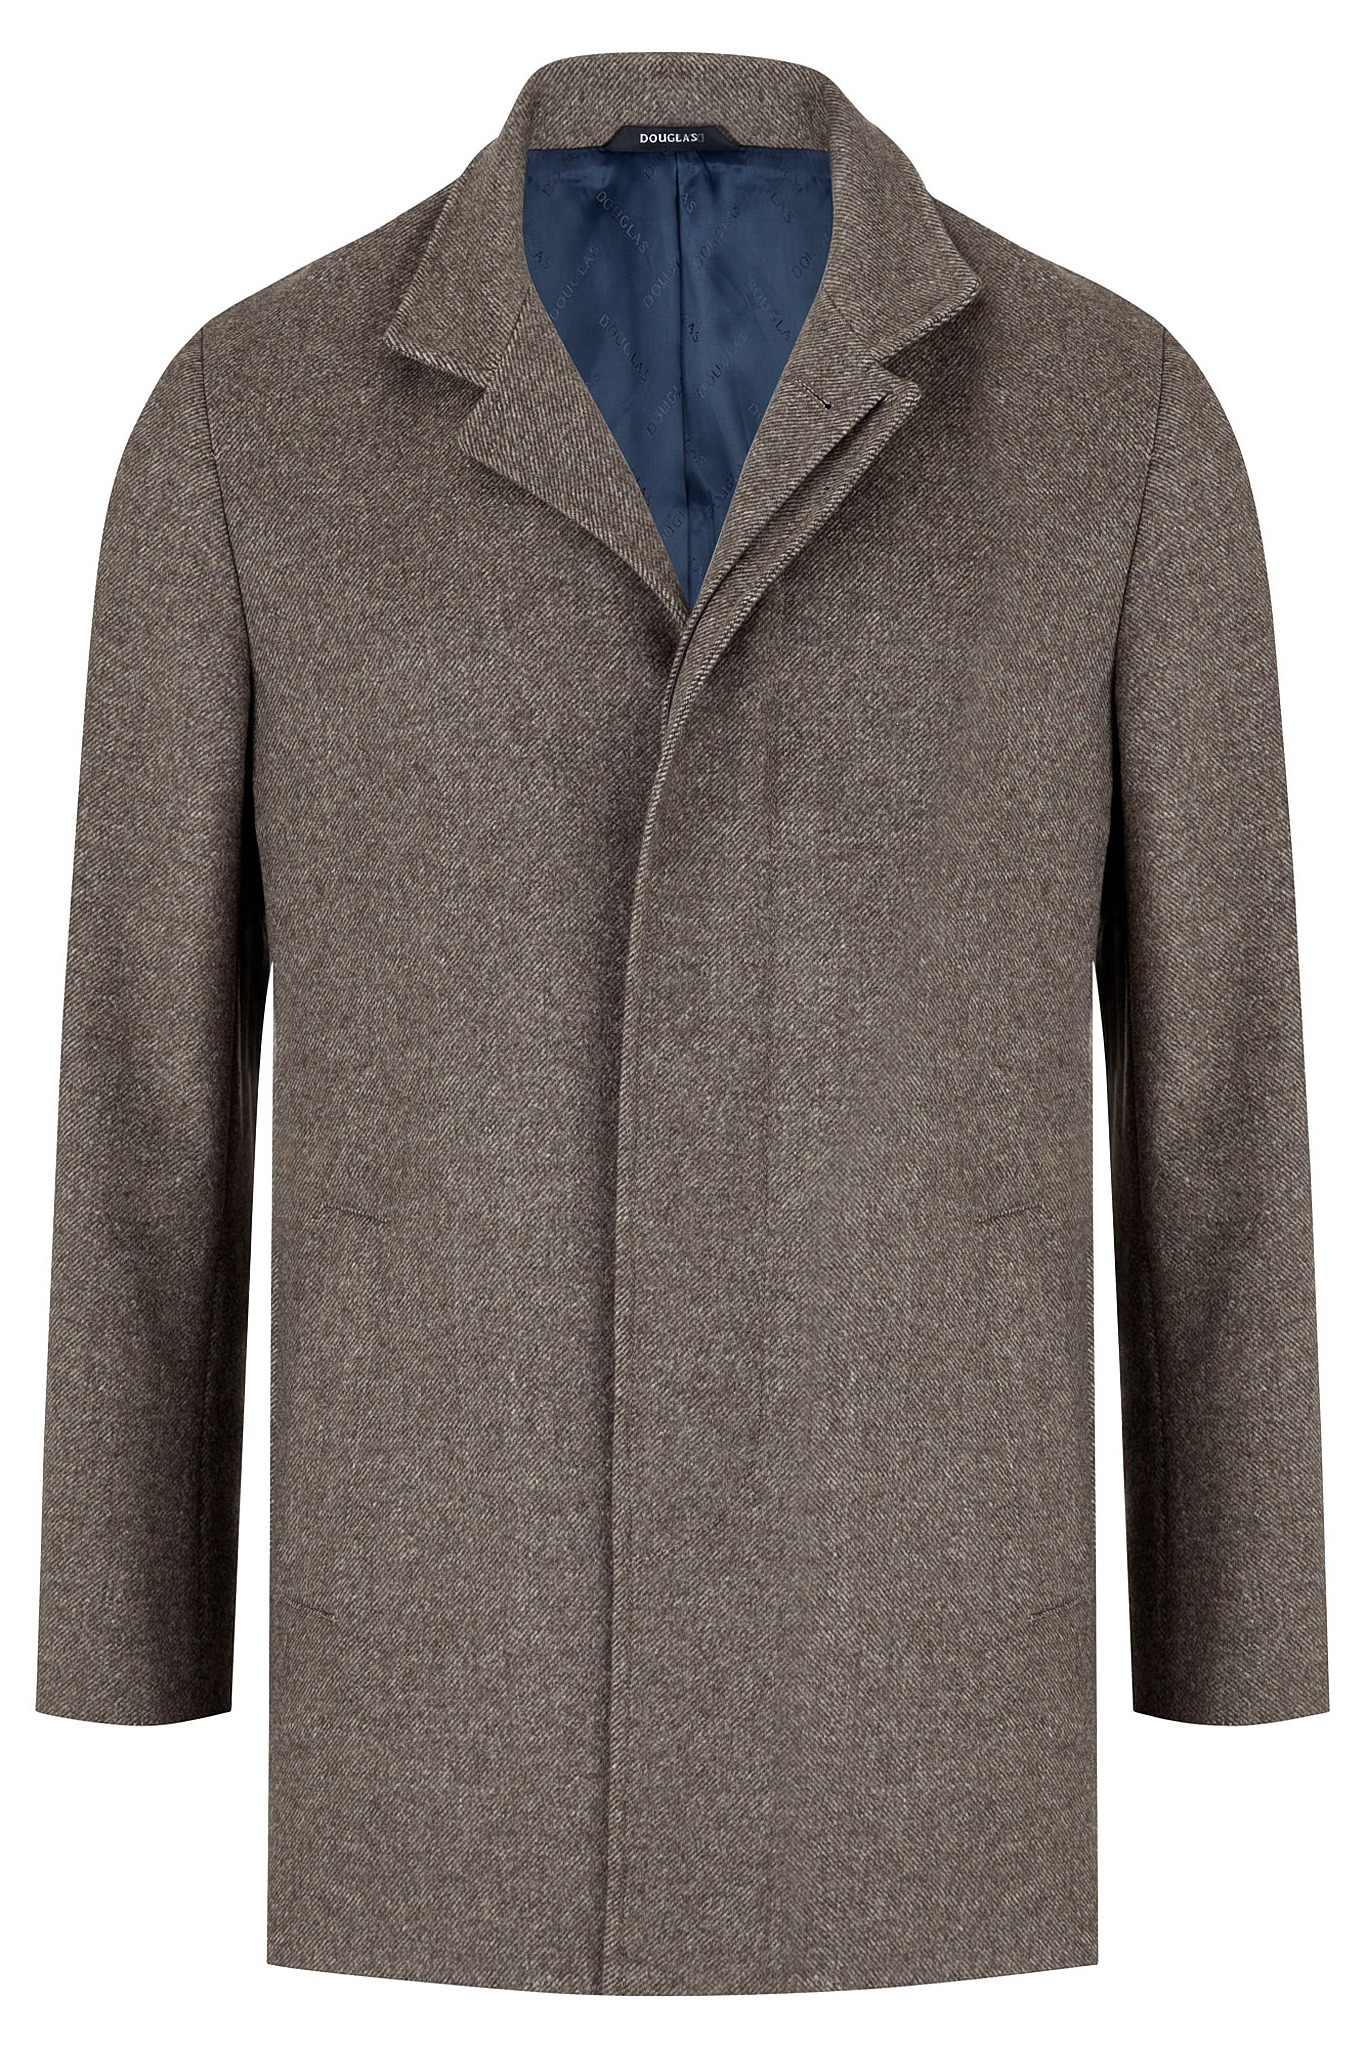 Garrison Grey Wool Overcoat, Men's Coats & Jackets